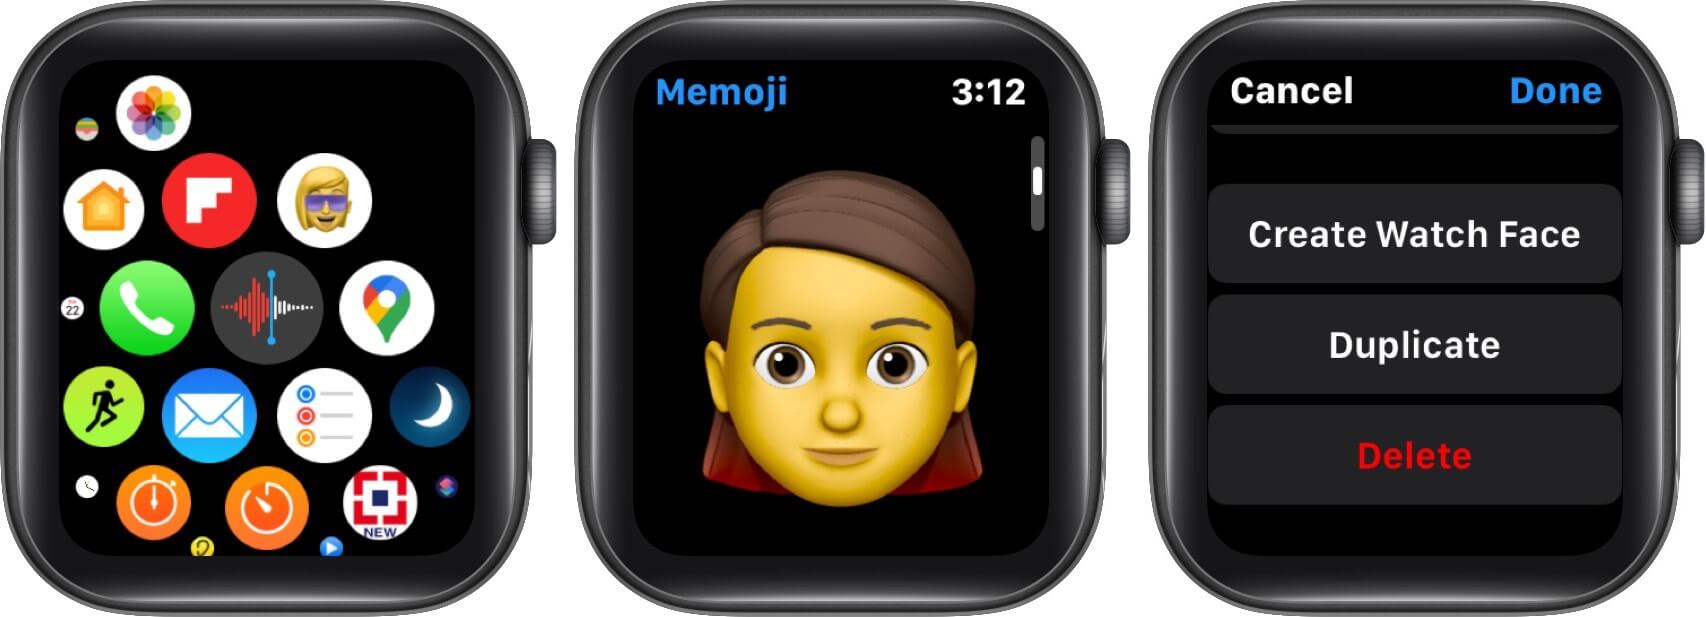 create duplicate memoji in memoji app on apple watch